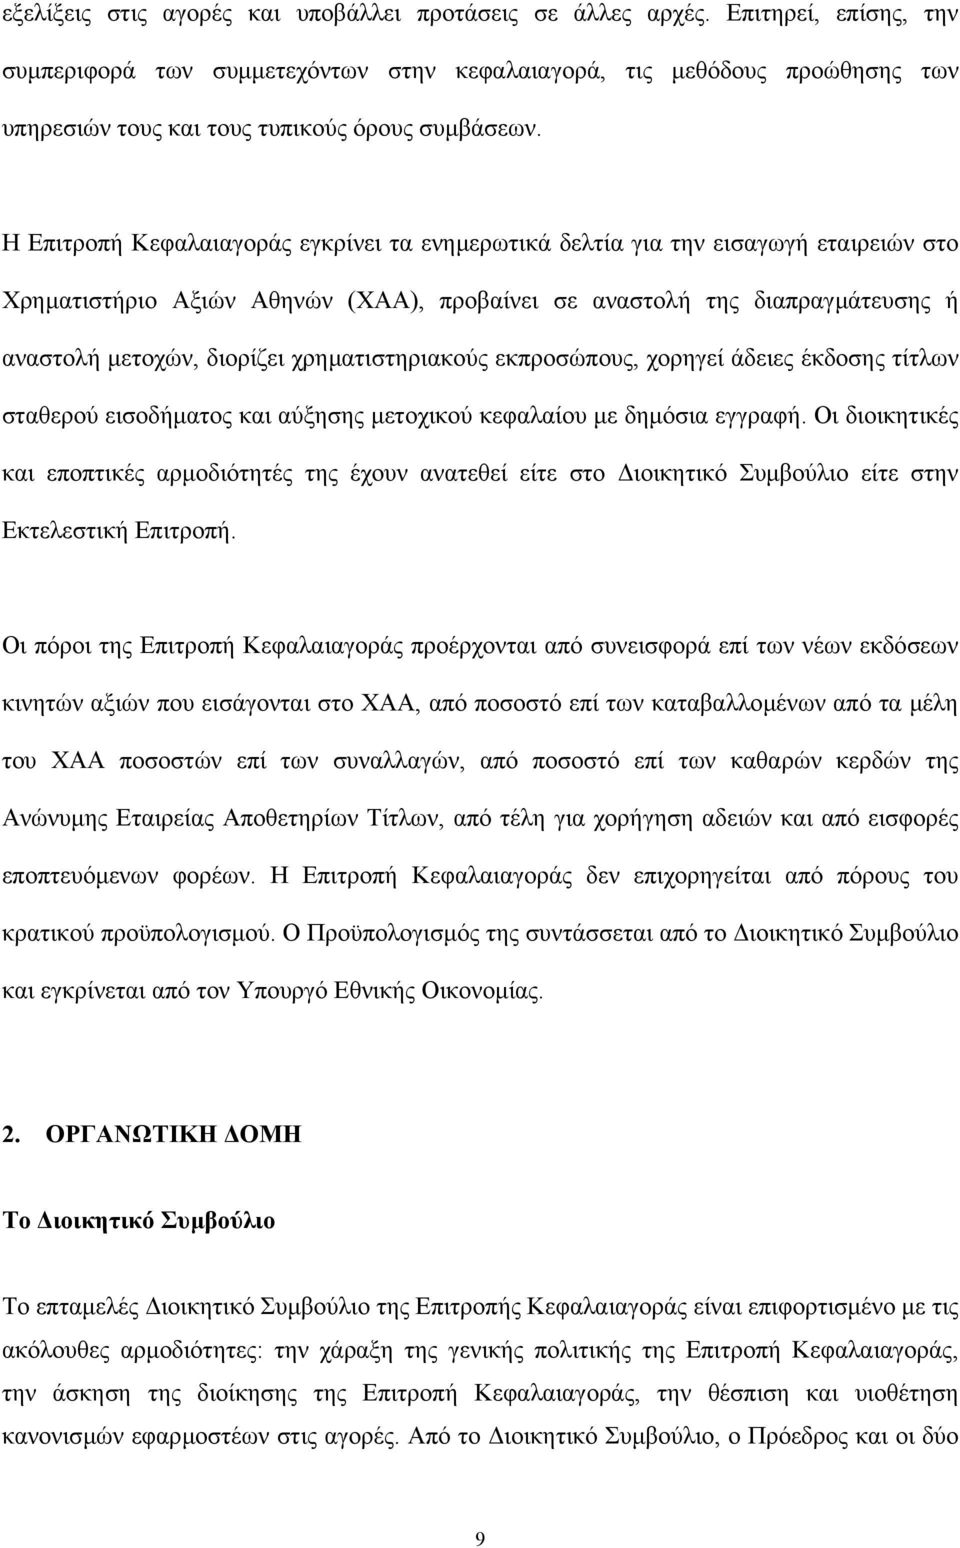 Η Επιτροπή Κεφαλαιαγοράς εγκρίνει τα ενηµερωτικά δελτία για την εισαγωγή εταιρειών στο Χρηµατιστήριο Αξιών Αθηνών (ΧΑΑ), προβαίνει σε αναστολή της διαπραγµάτευσης ή αναστολή µετοχών, διορίζει